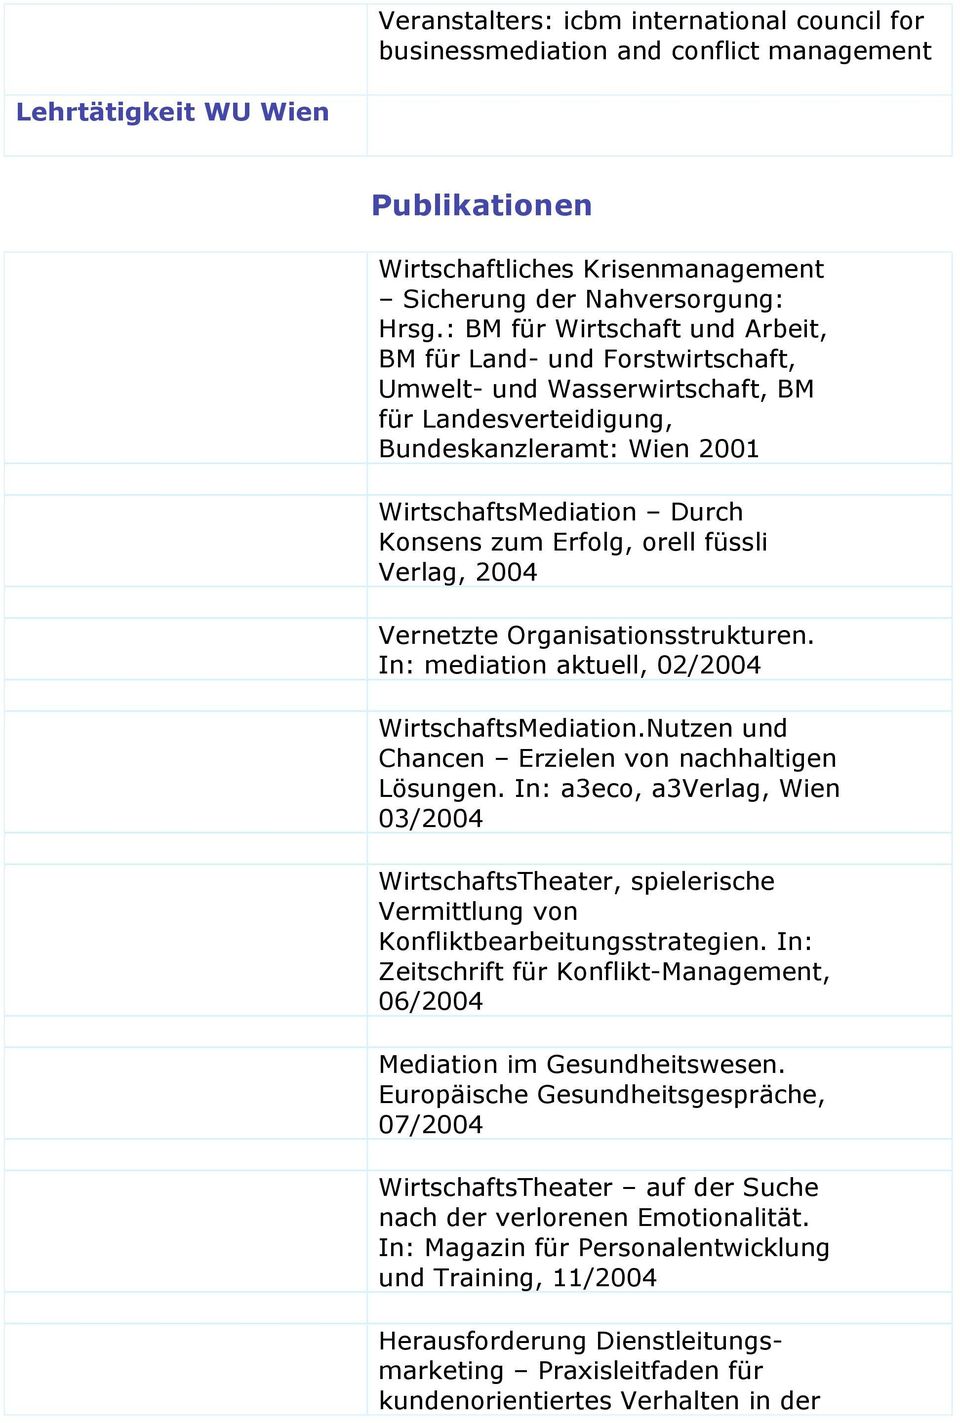 orell füssli Verlag, 2004 Vernetzte Organisationsstrukturen. In: mediation aktuell, 02/2004 WirtschaftsMediation.Nutzen und Chancen Erzielen von nachhaltigen Lösungen.